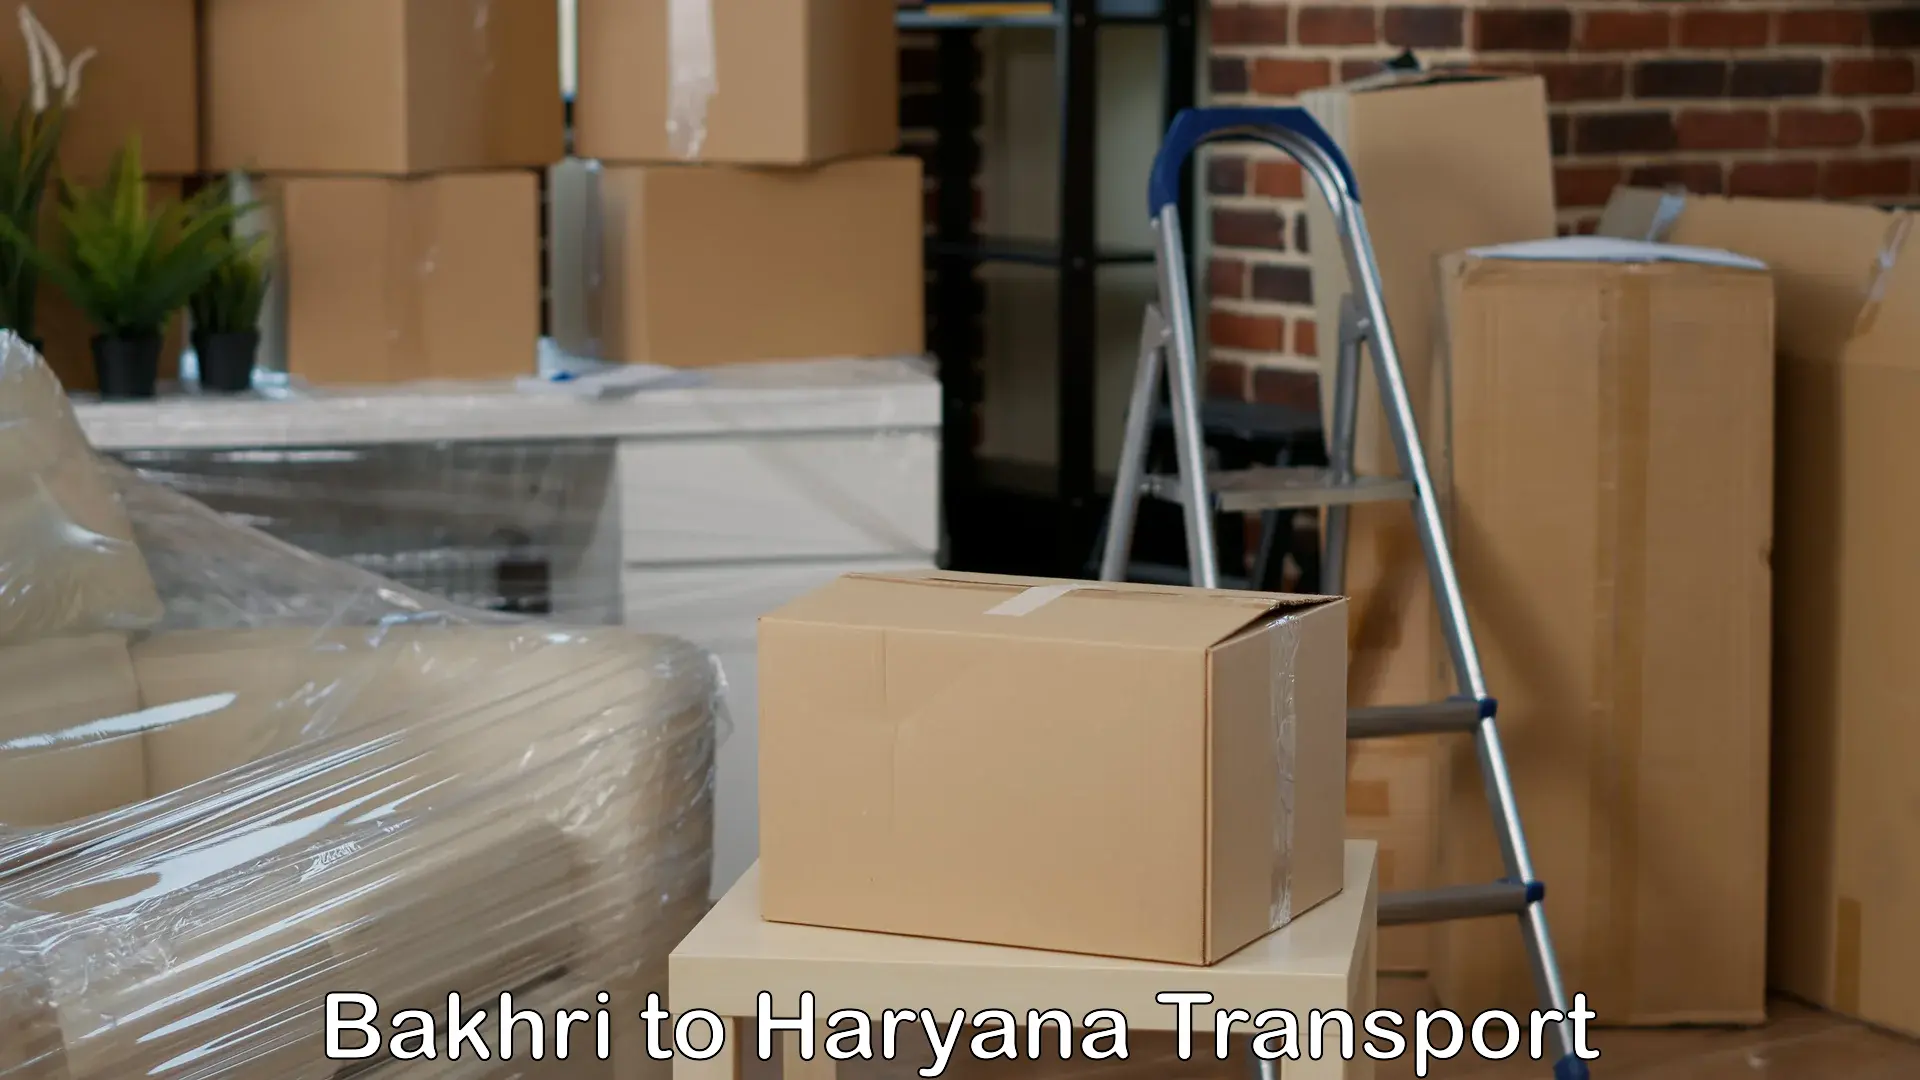 Furniture transport service Bakhri to Kurukshetra University